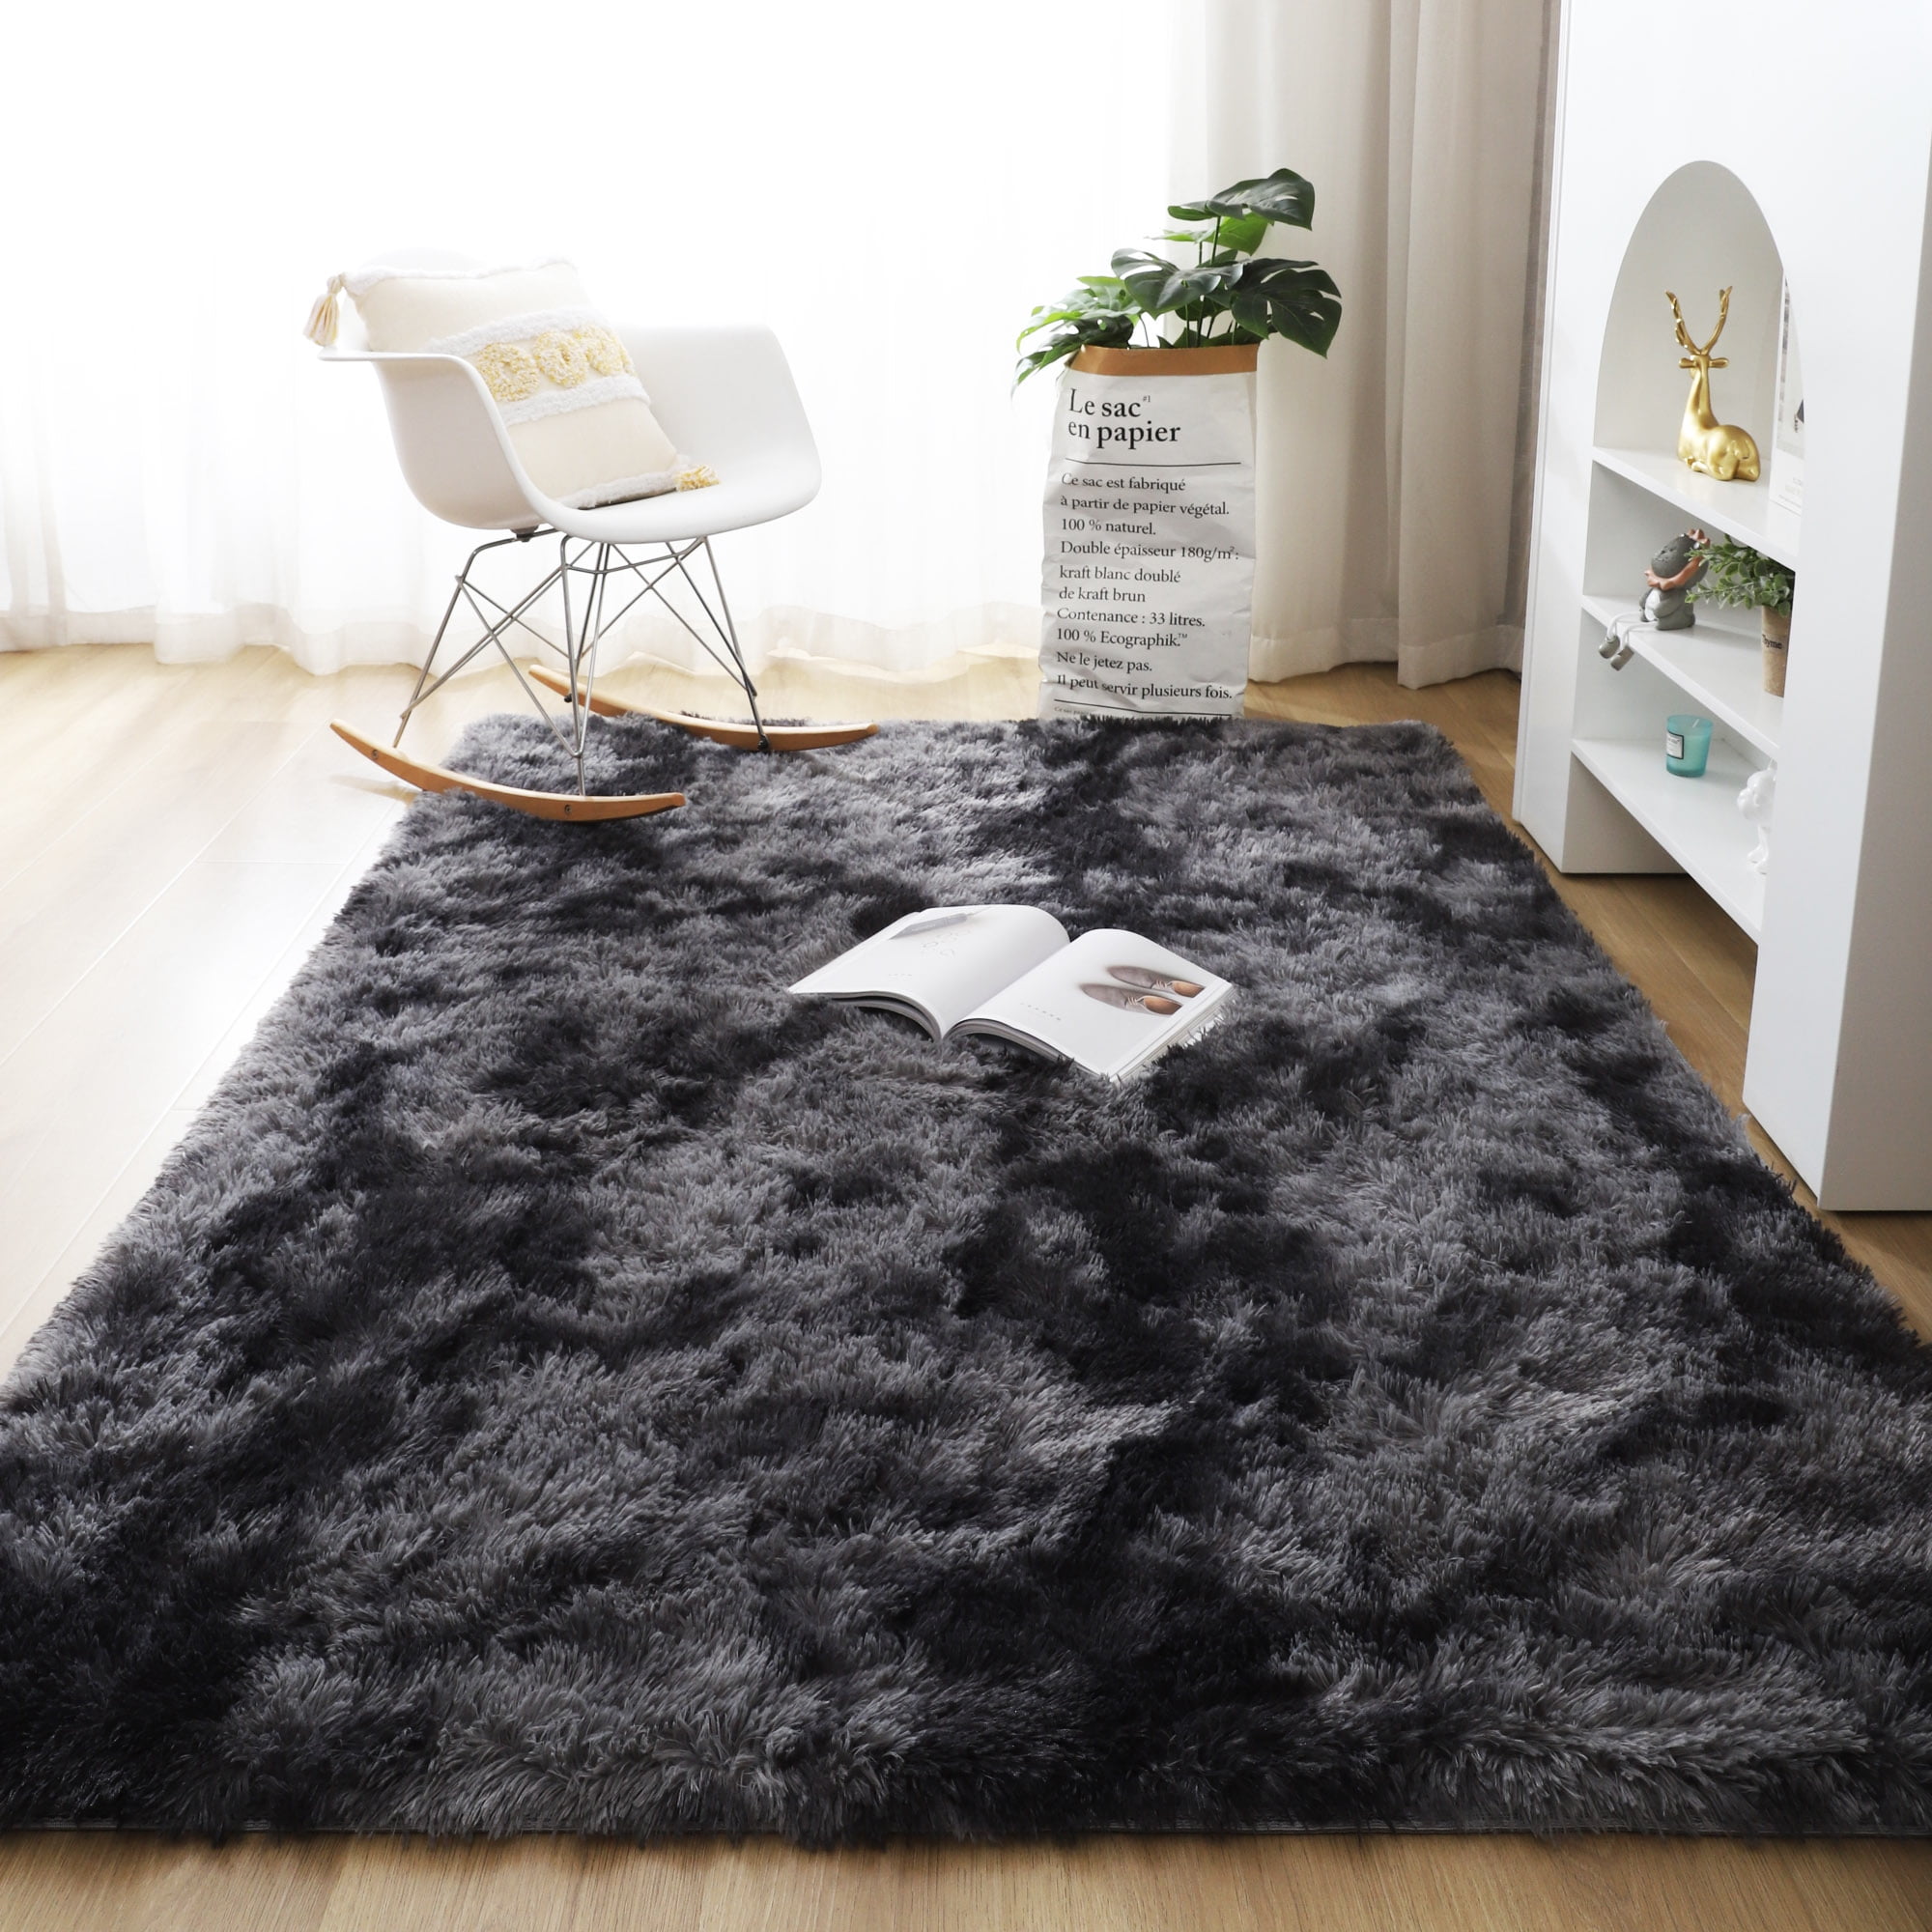 Shaggy Fluffy Area Rug Anti-Skid Living Room Carpet Soft Bedroom Floor Door Mat 